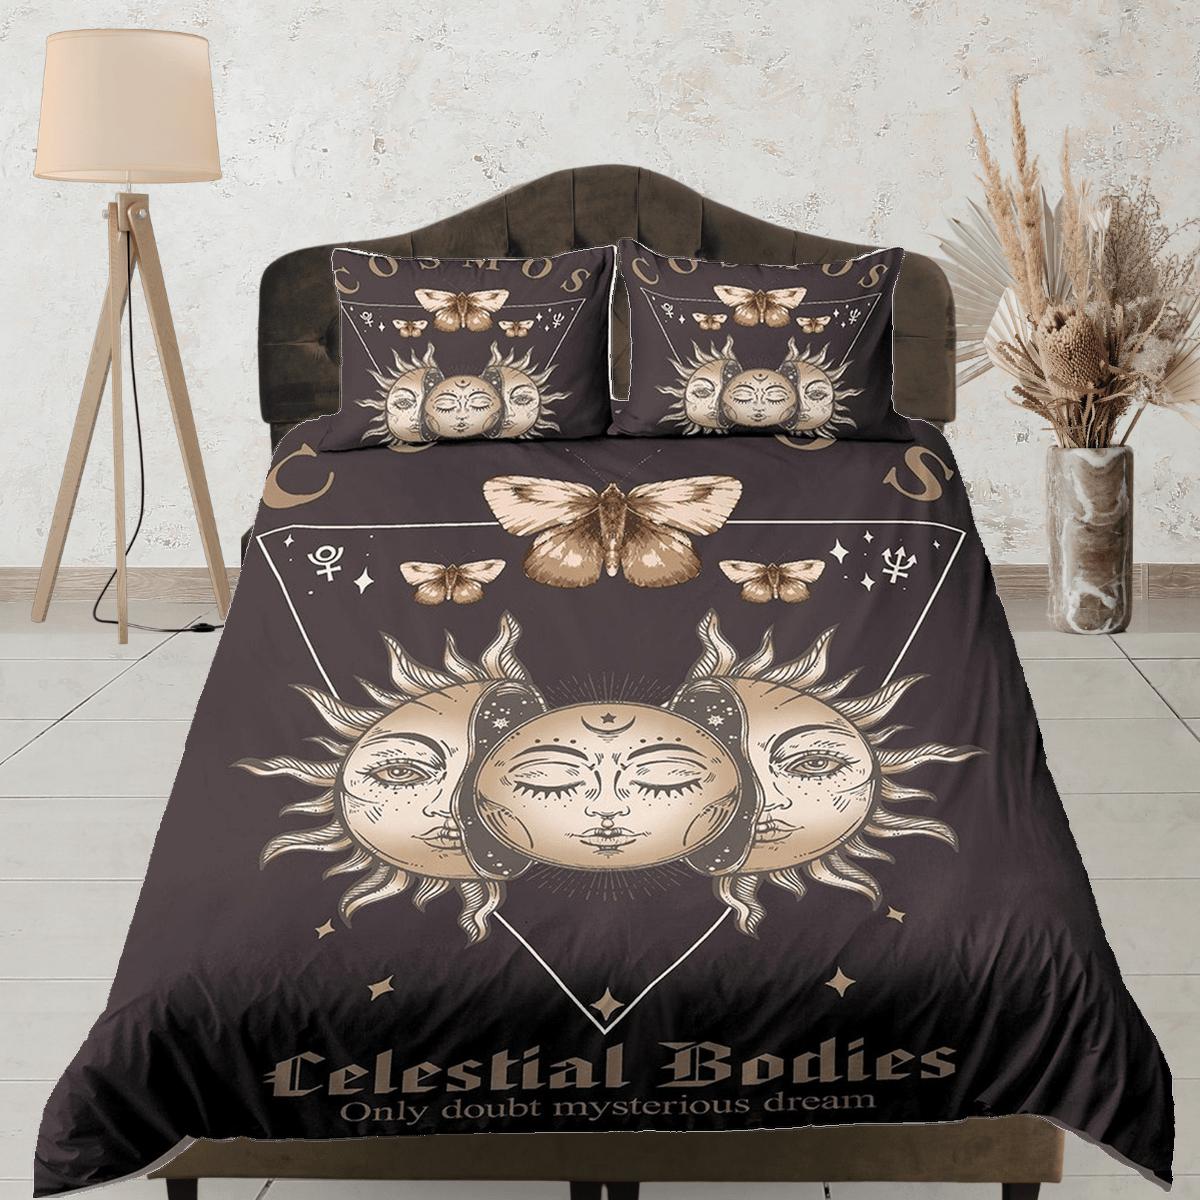 daintyduvet Celestial bedding full moon, mystical sun, witchy dorm bedding, aesthetic duvet, boho bedding set full king queen, astrology gift, gothic